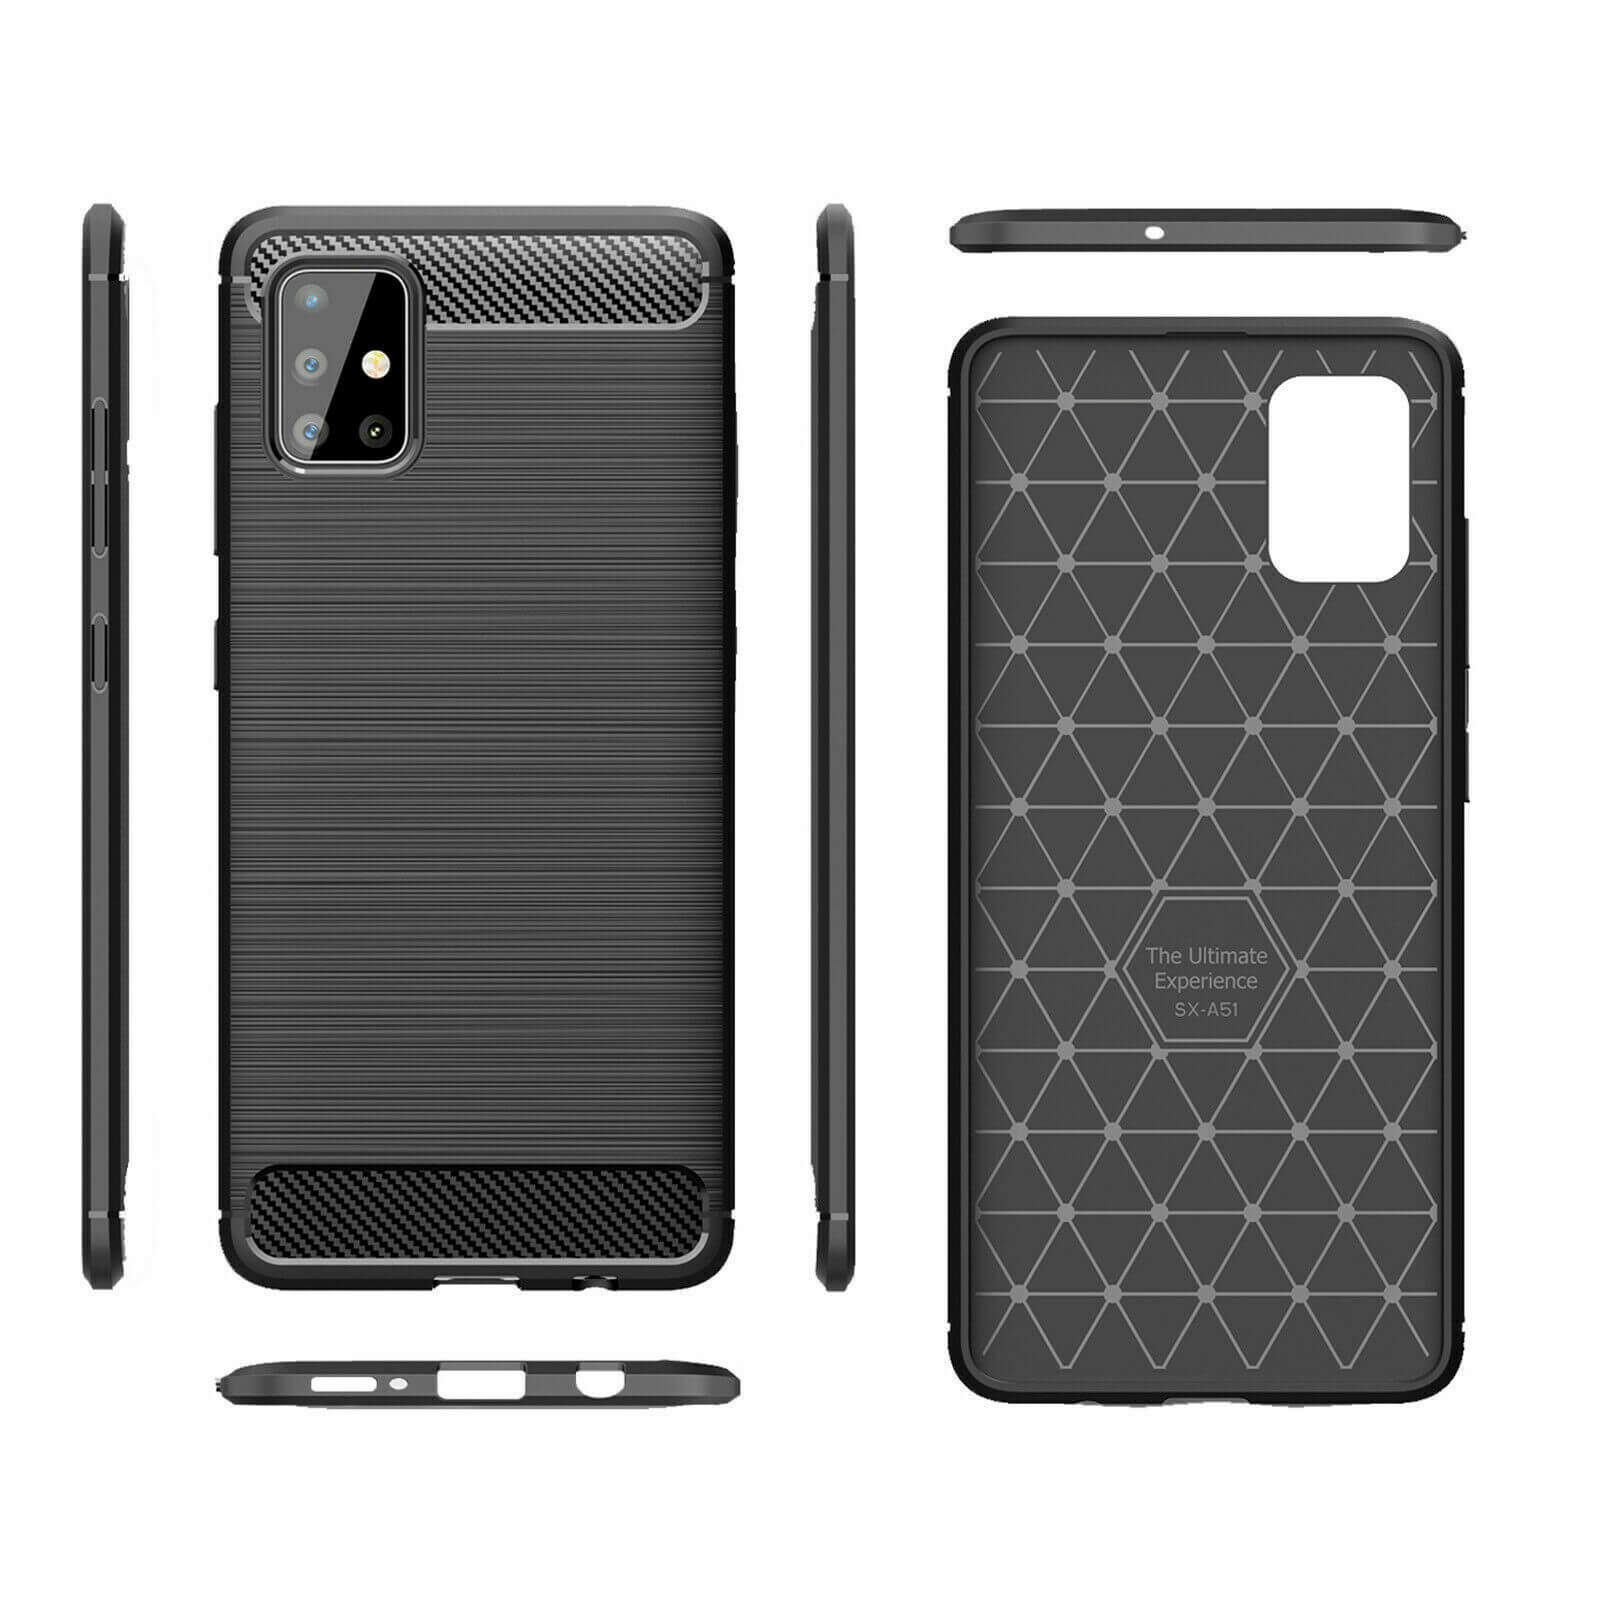 For Samsung Galaxy A51 Carbon Fibre Design Case TPU Cover - Black